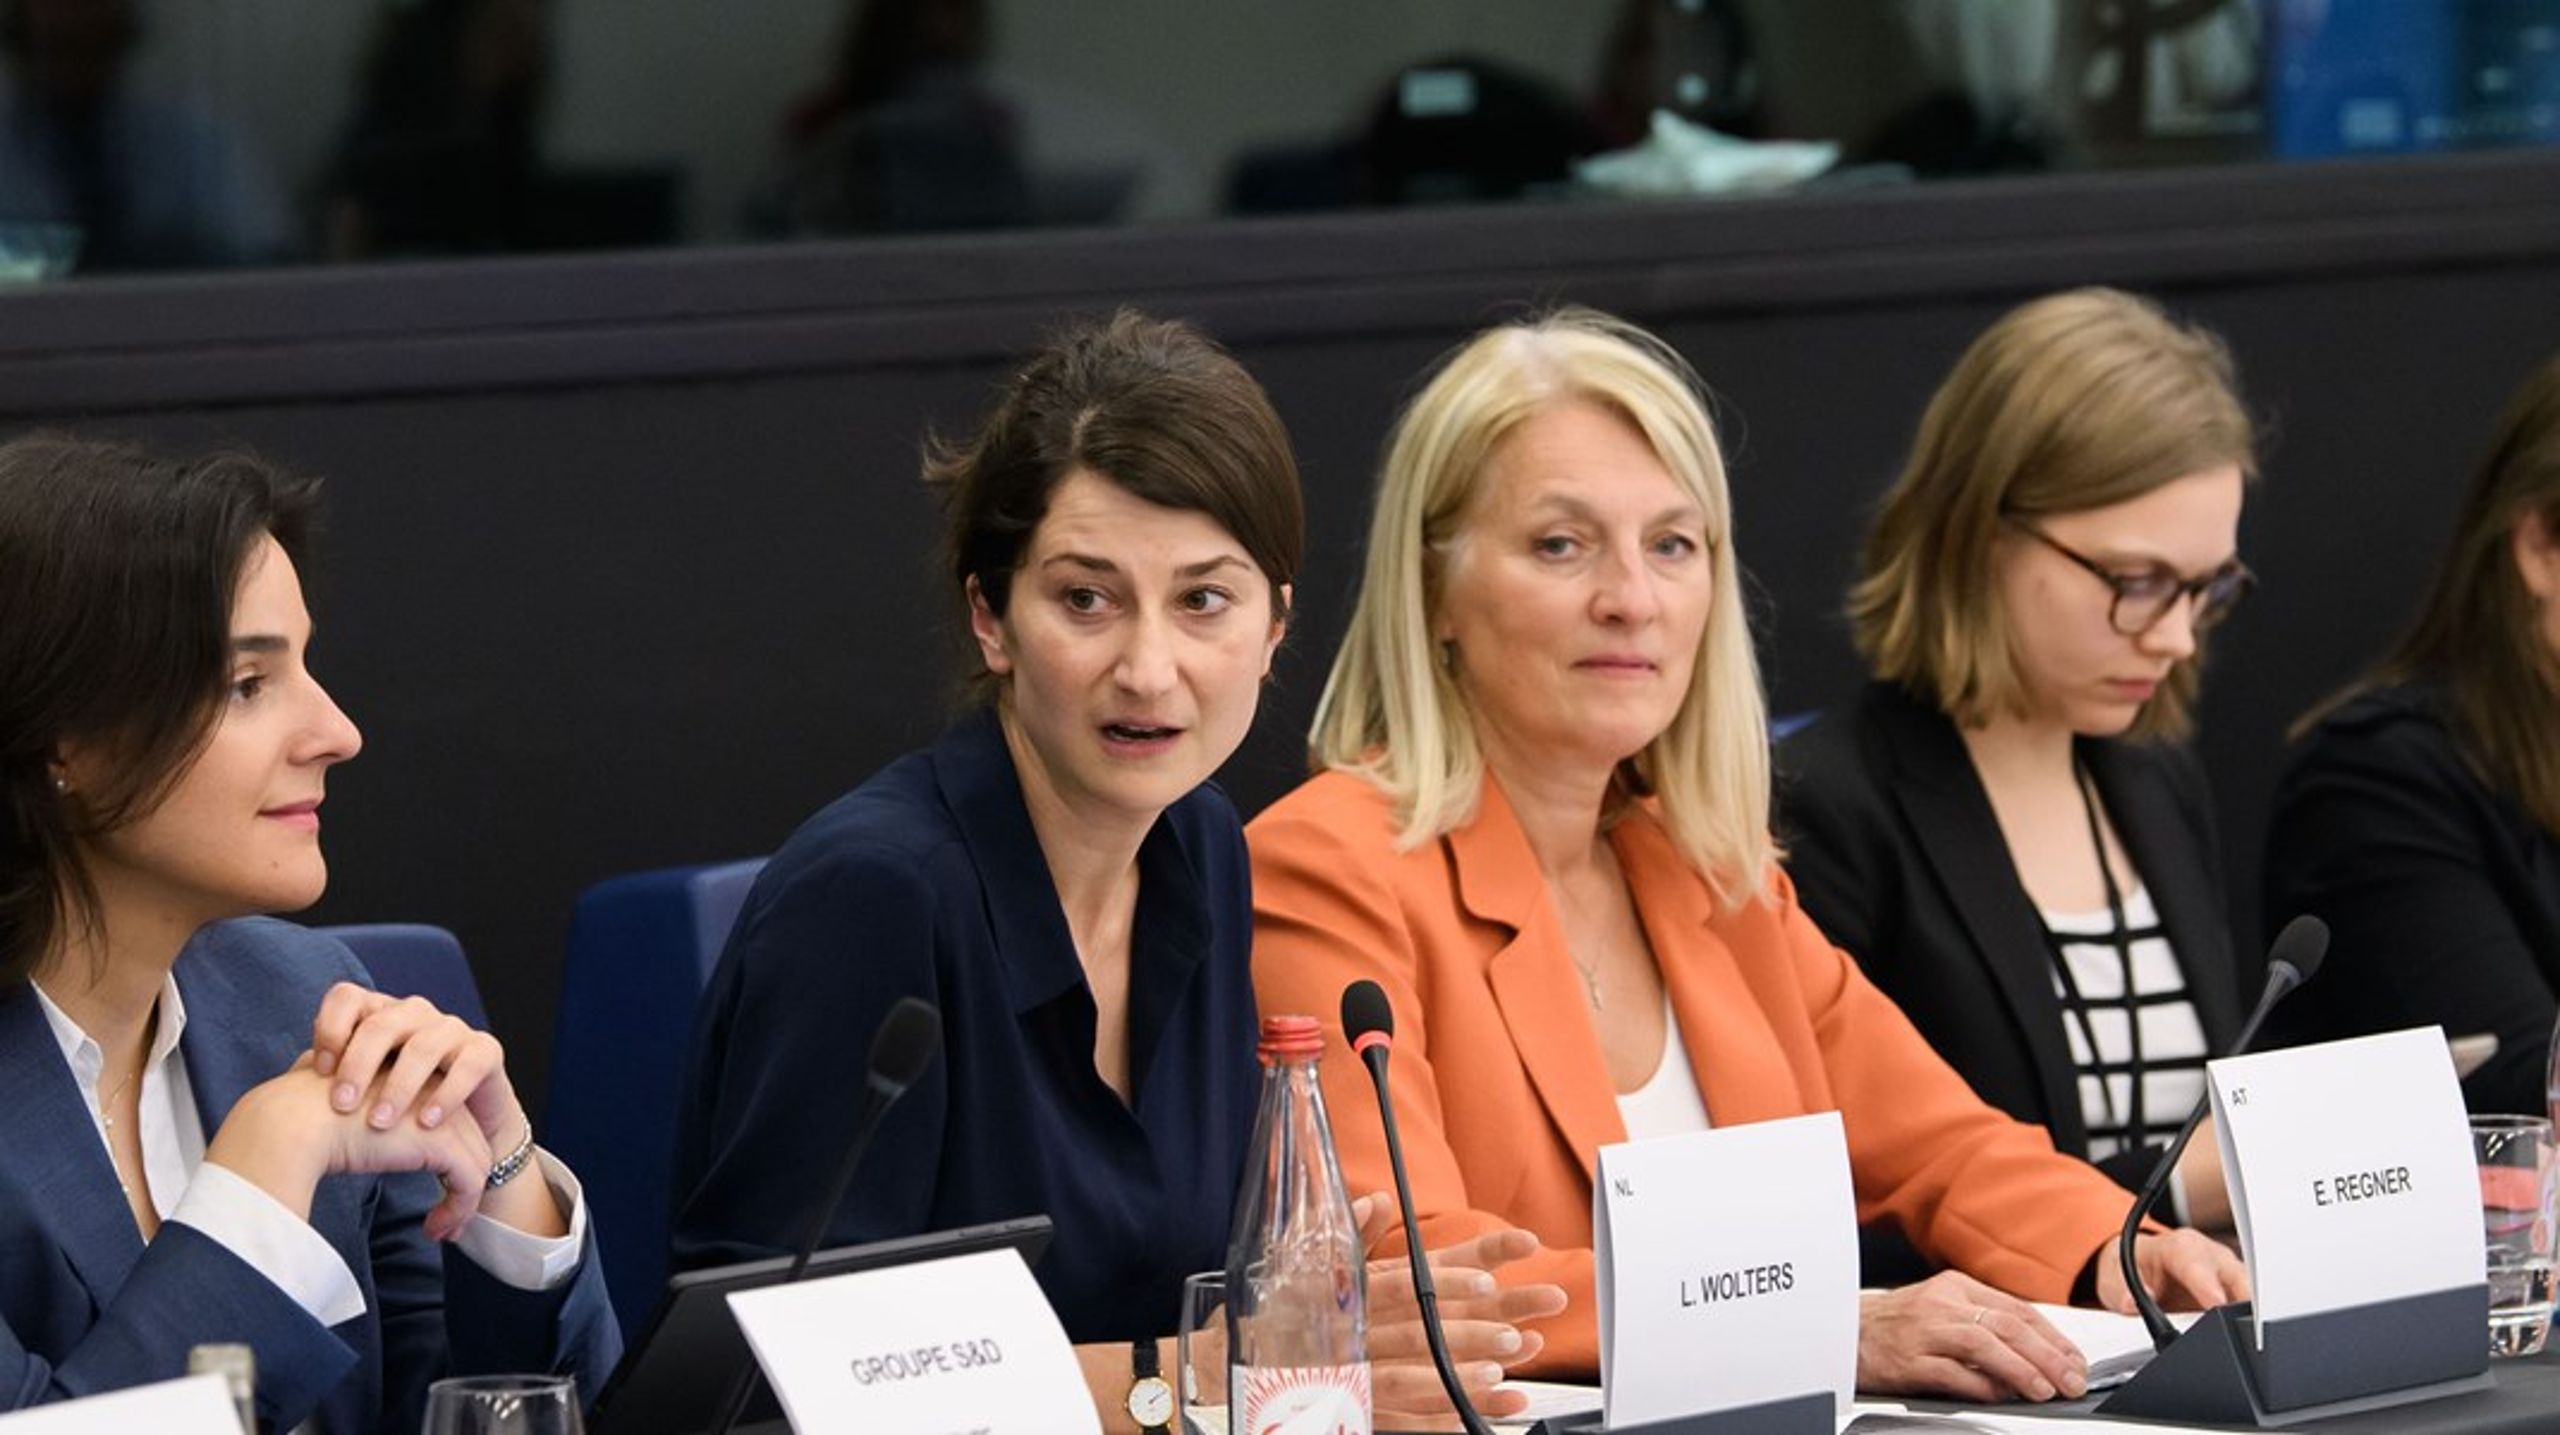 De afsluttende forhandlinger om måltal for kvinder i store virksomheders bestyrelser sluttede tirsdag. I midten ses Europa-Parlamentets chefforhandlere&nbsp;Lara Wolters (tv.) og&nbsp;Evelyn Regner&nbsp;(th.).